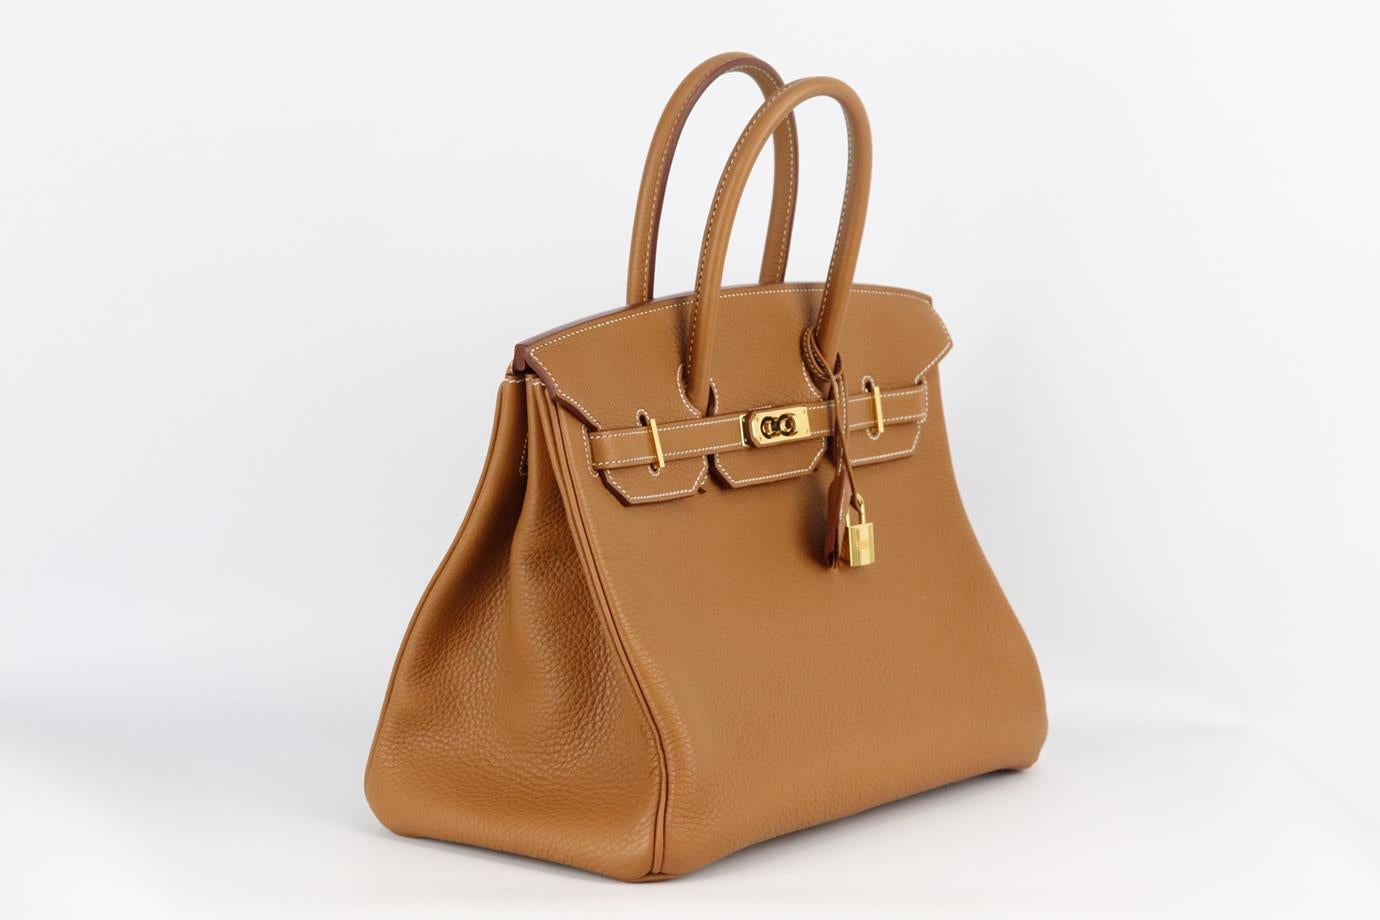 Hermès 2012 Birkin 35cm Veau Togo Leather Bag For Sale 1